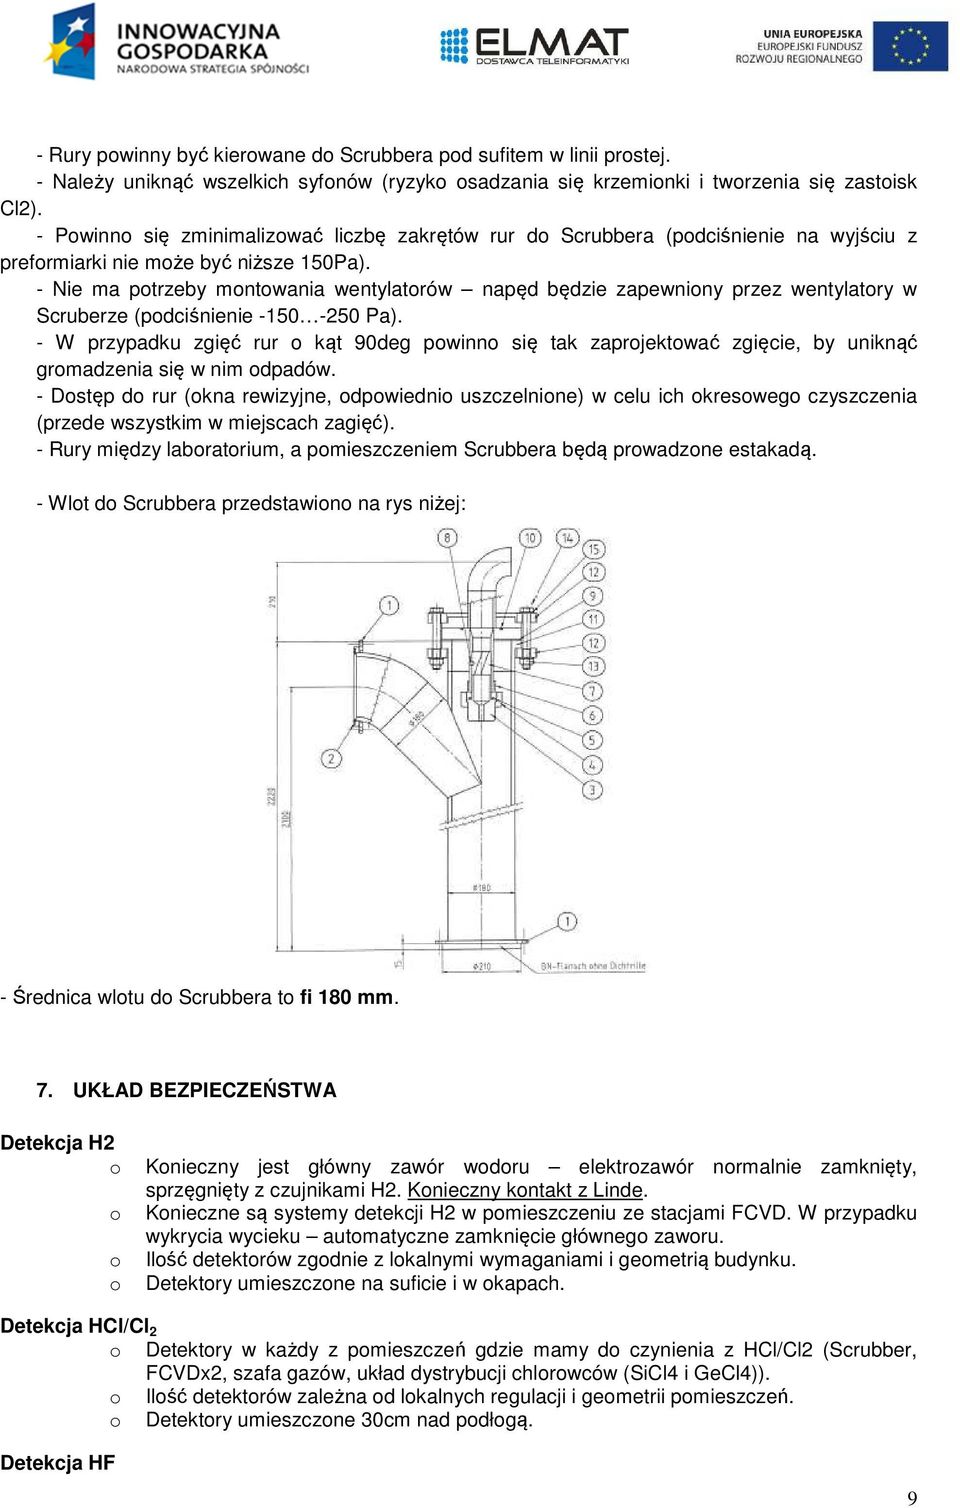 - Nie ma ptrzeby mntwania wentylatrów napęd będzie zapewniny przez wentylatry w Scruberze (pdciśnienie -150-250 Pa).